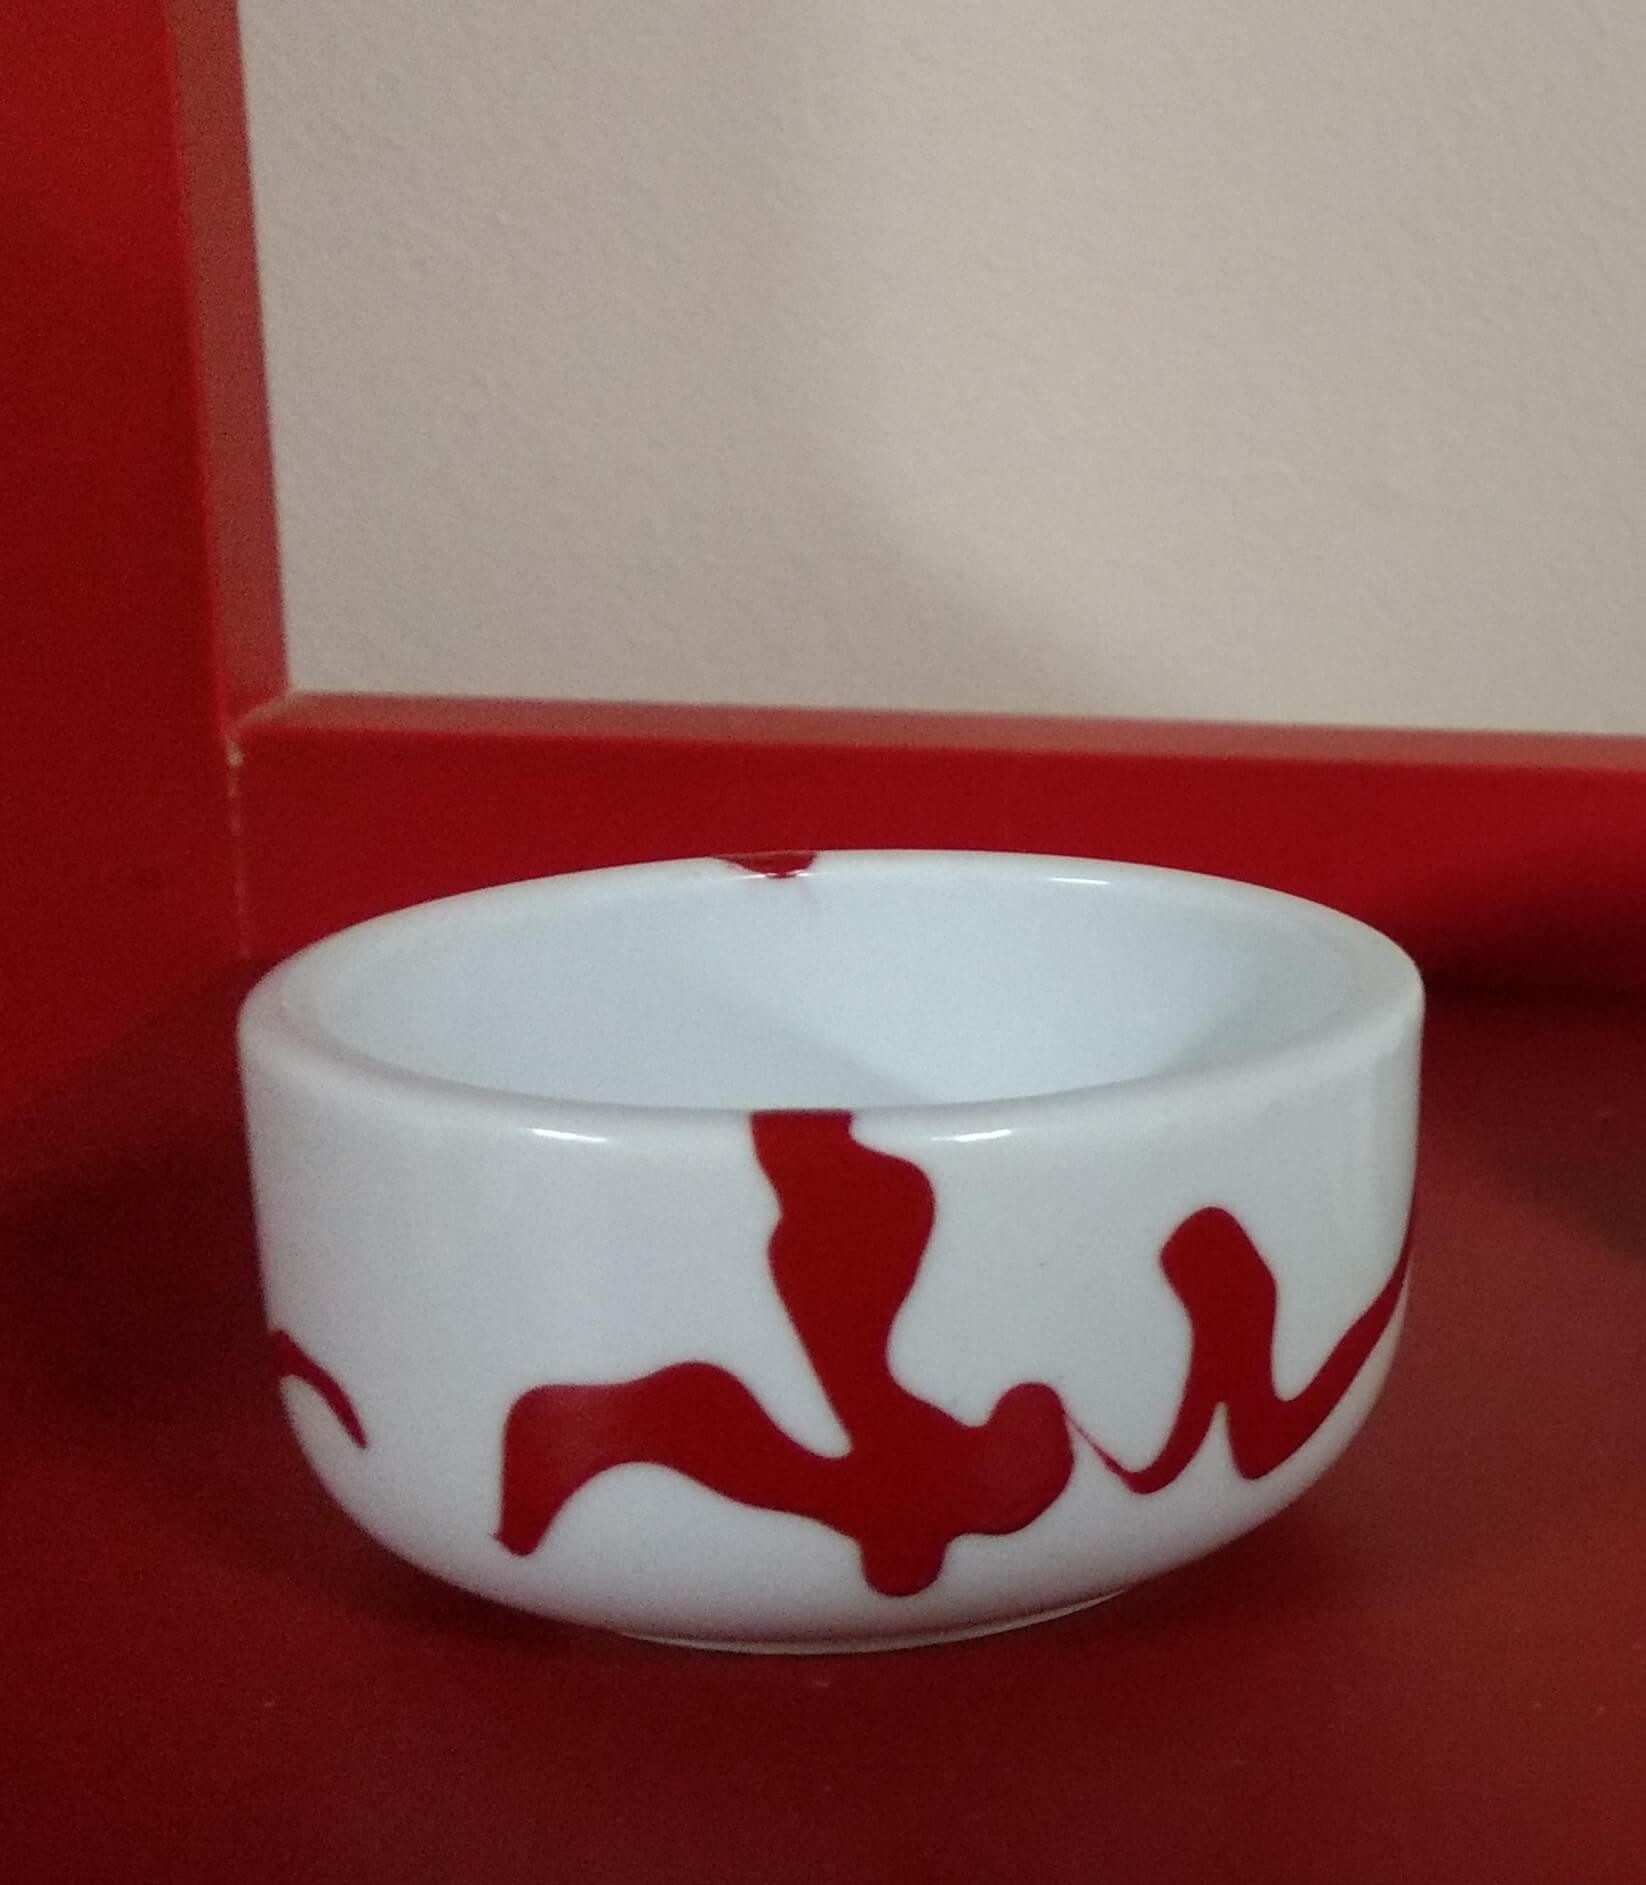 Potinho redondo em porcelana branca com pintura vermelha